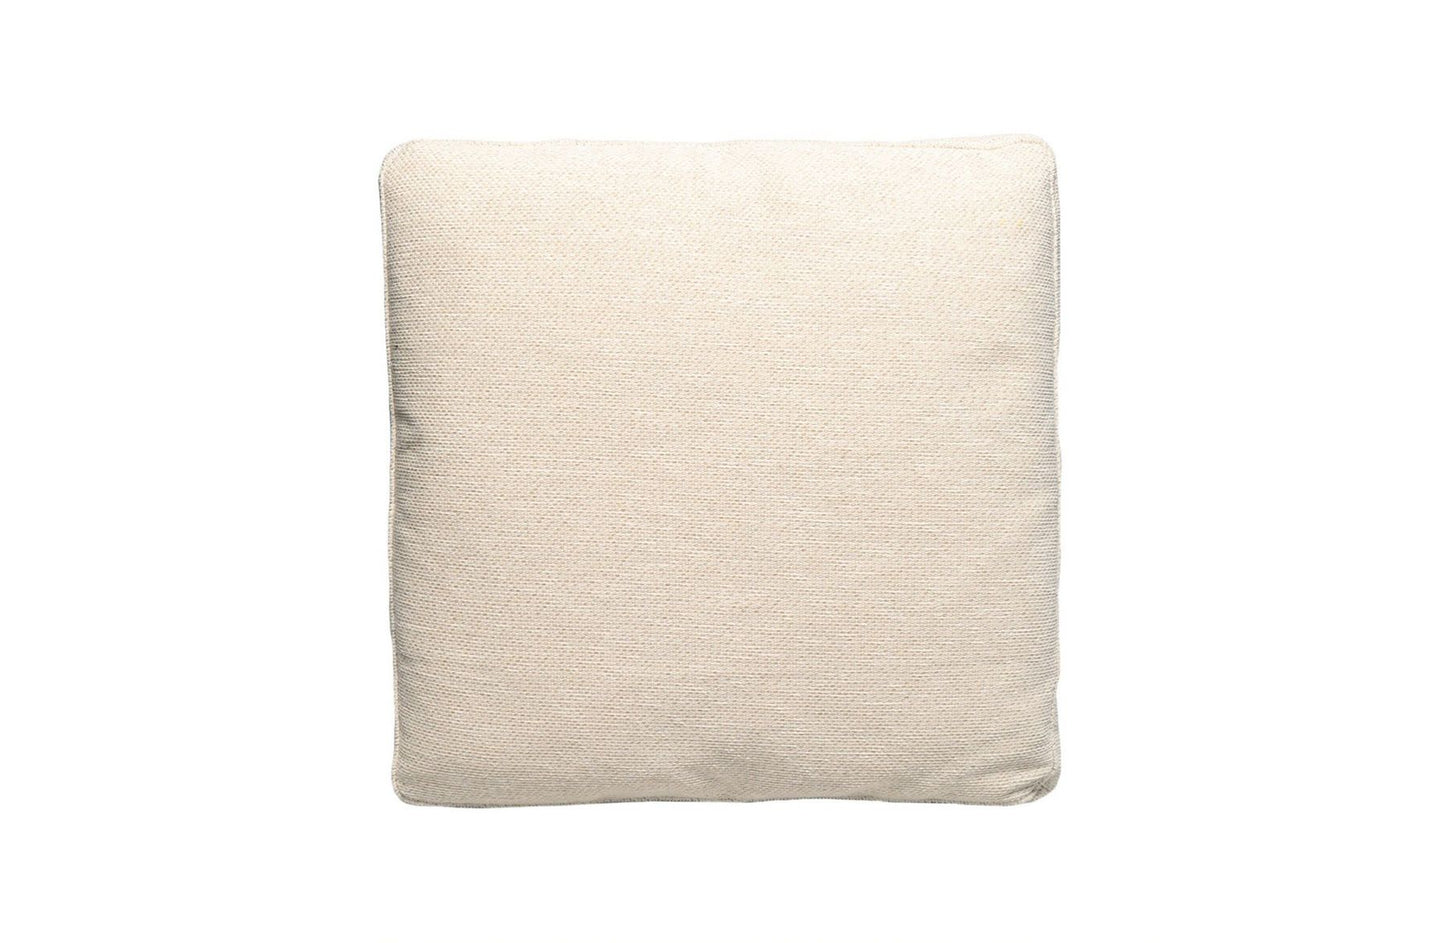 Gubbio Cushion 48x48 cm
